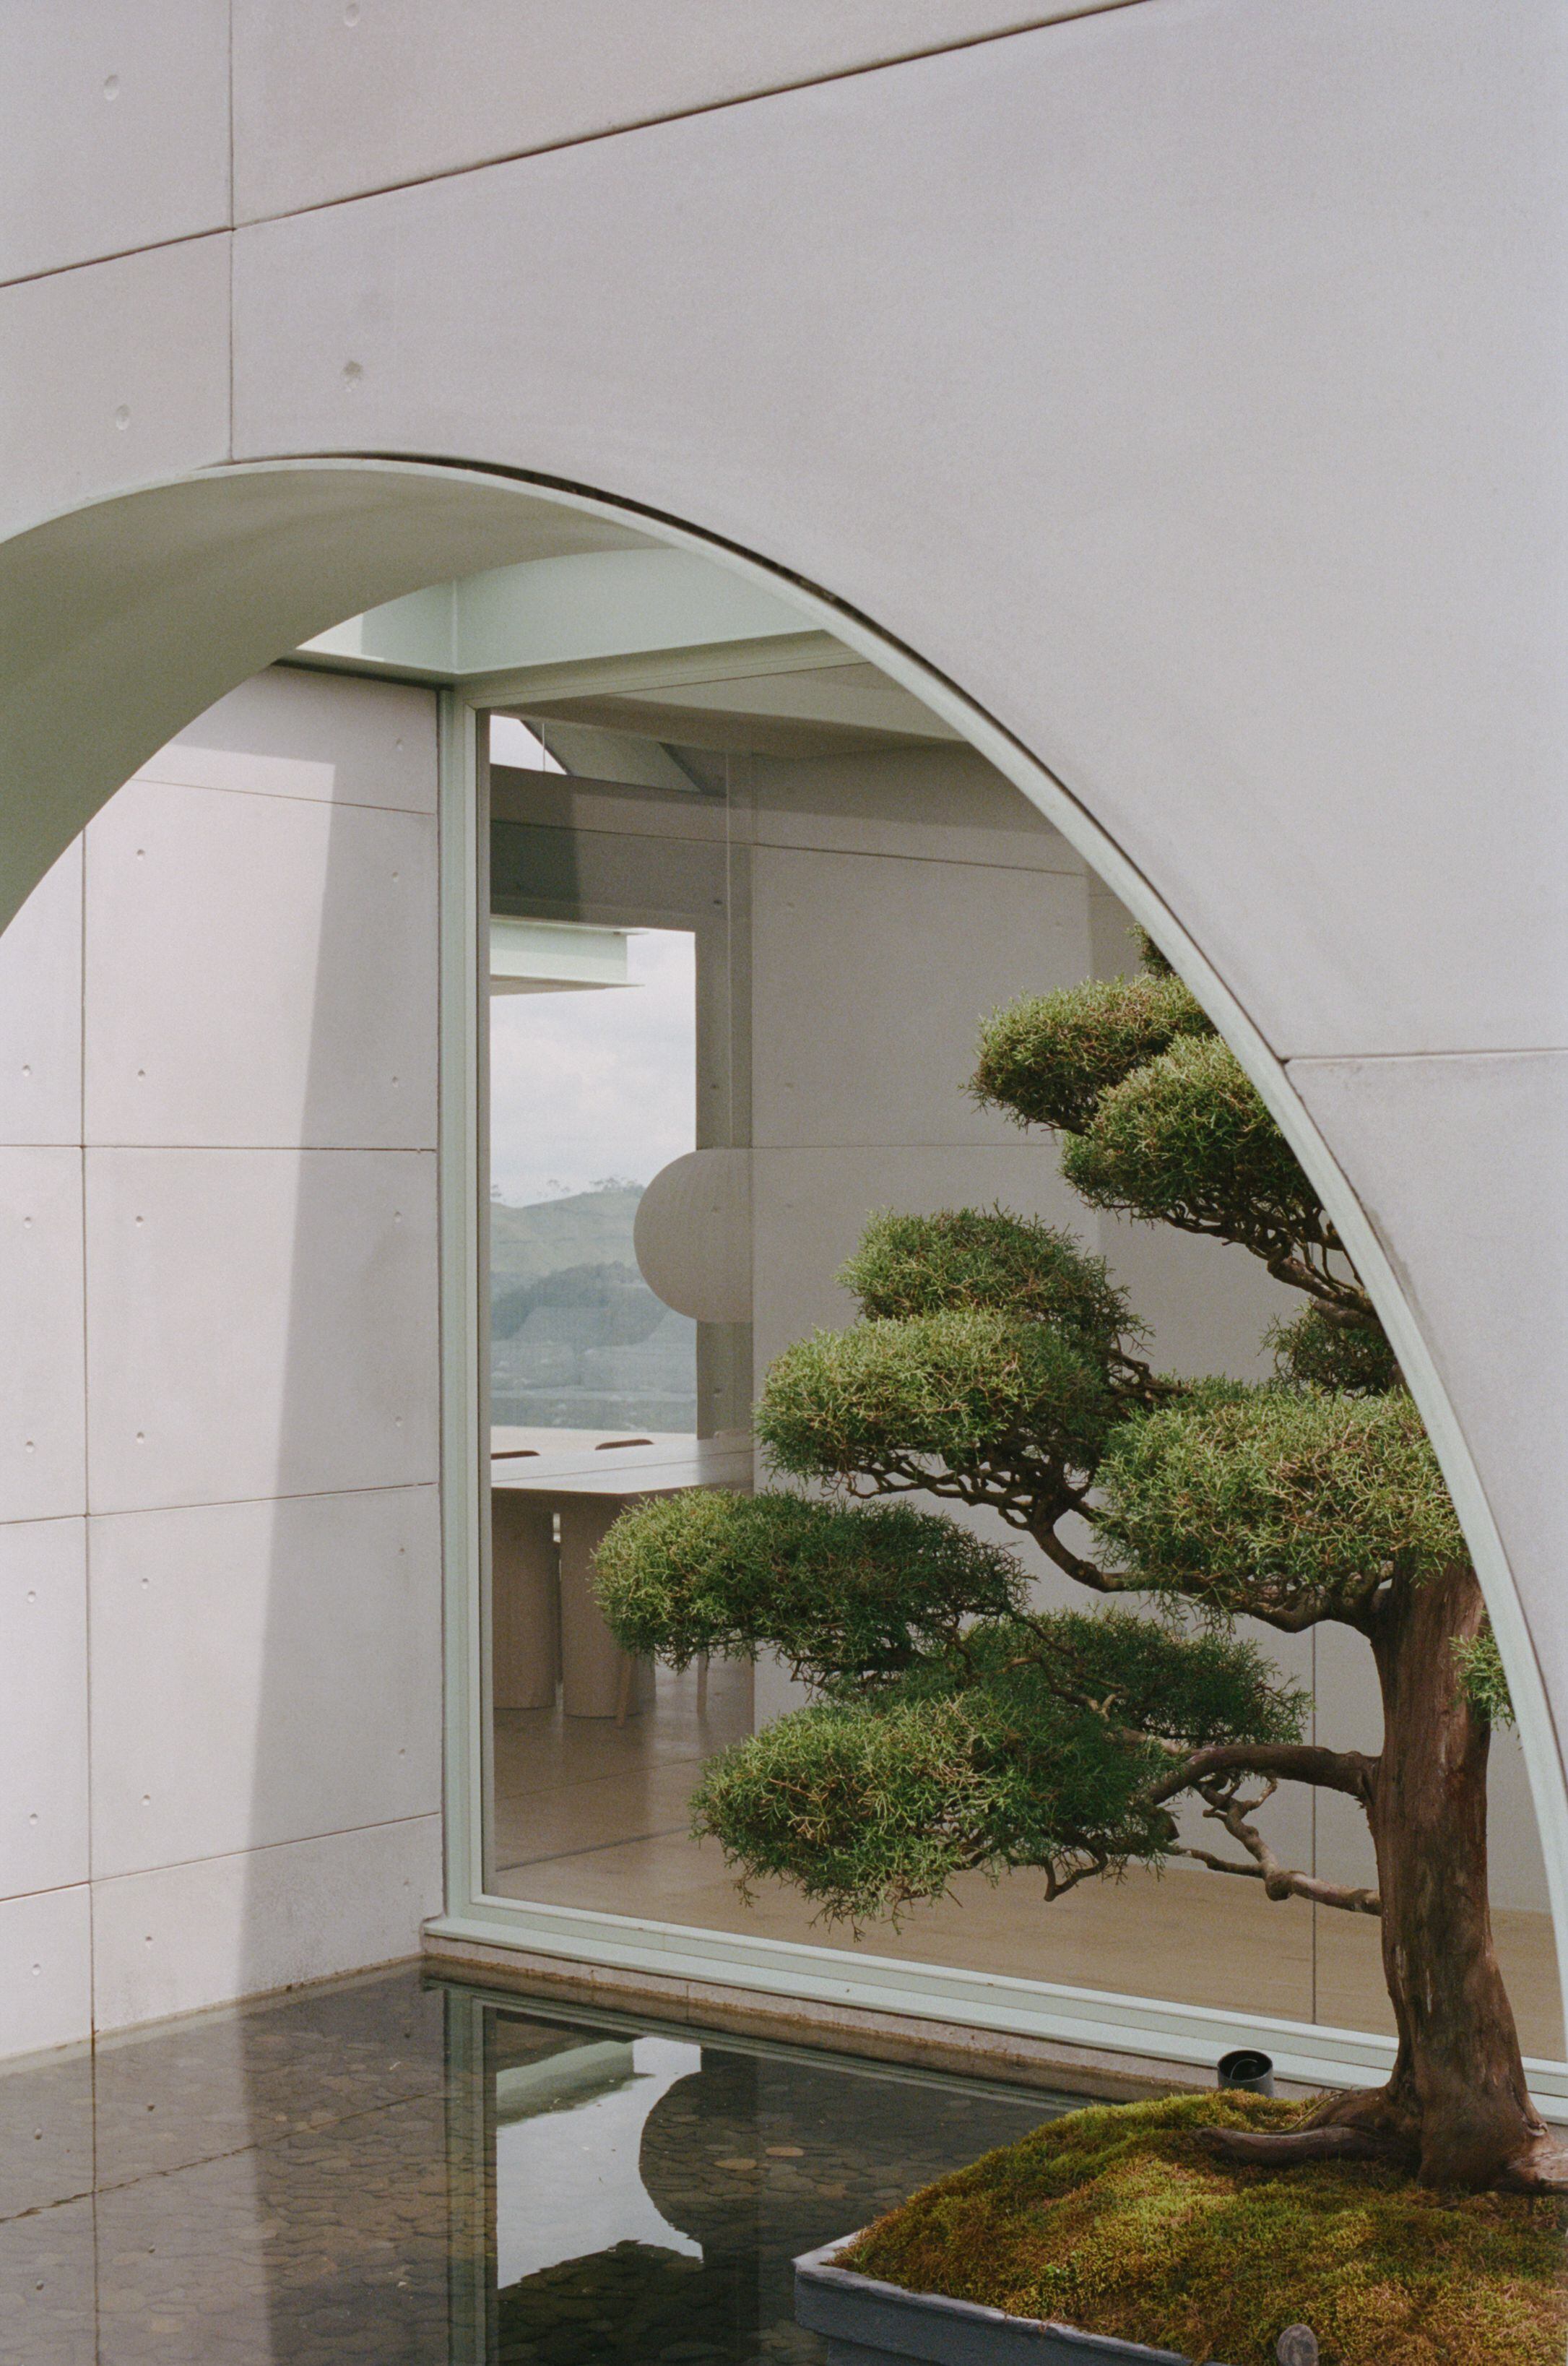 El paisajismo de la casa se ha inspirado en los jardines japoneses.